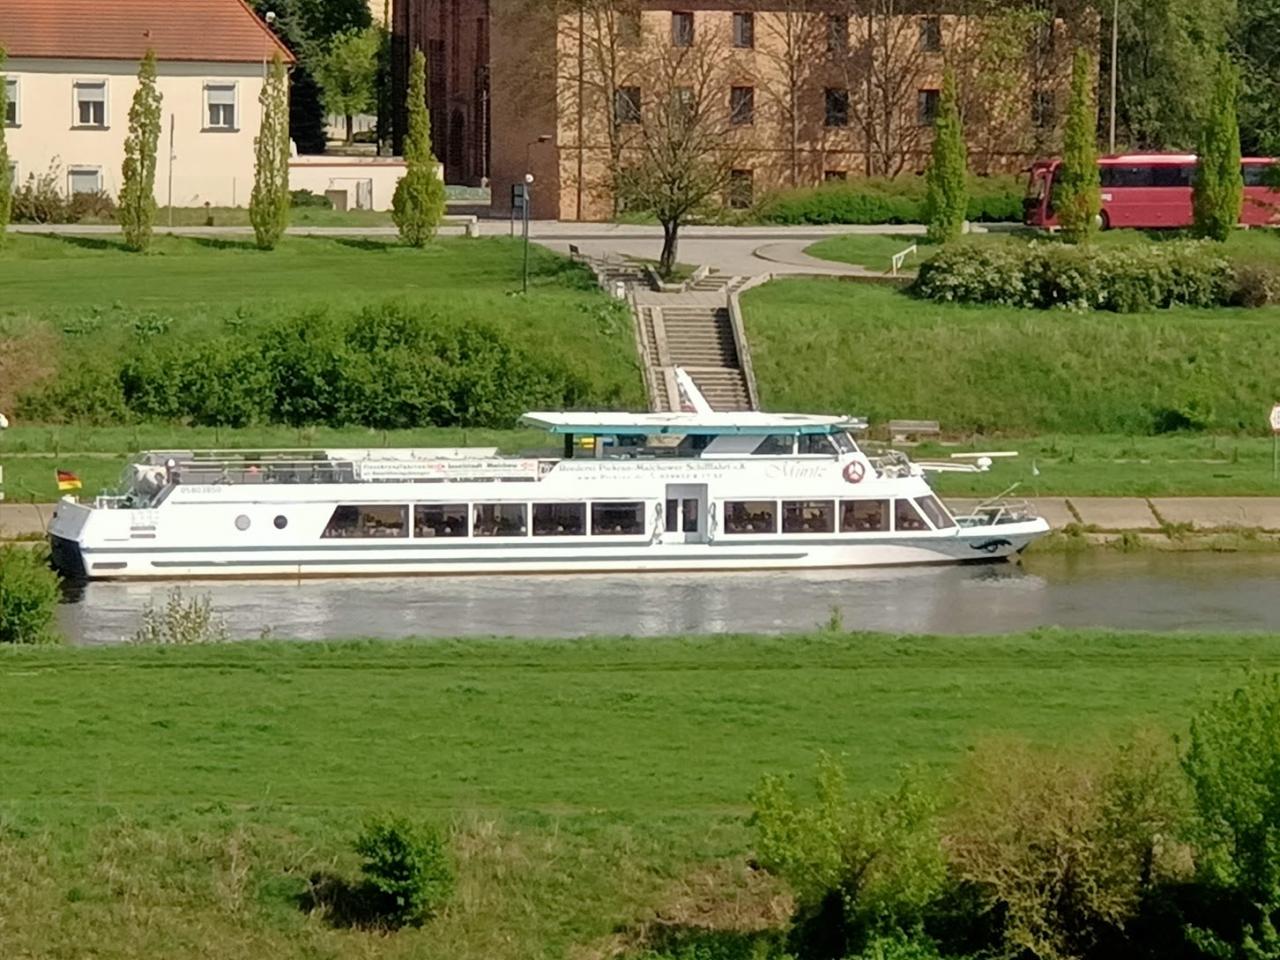 Niemiecki statek pasażerski w Poznaniu wywołał sensację. Zacumował blisko Ostrowa Tumskiego